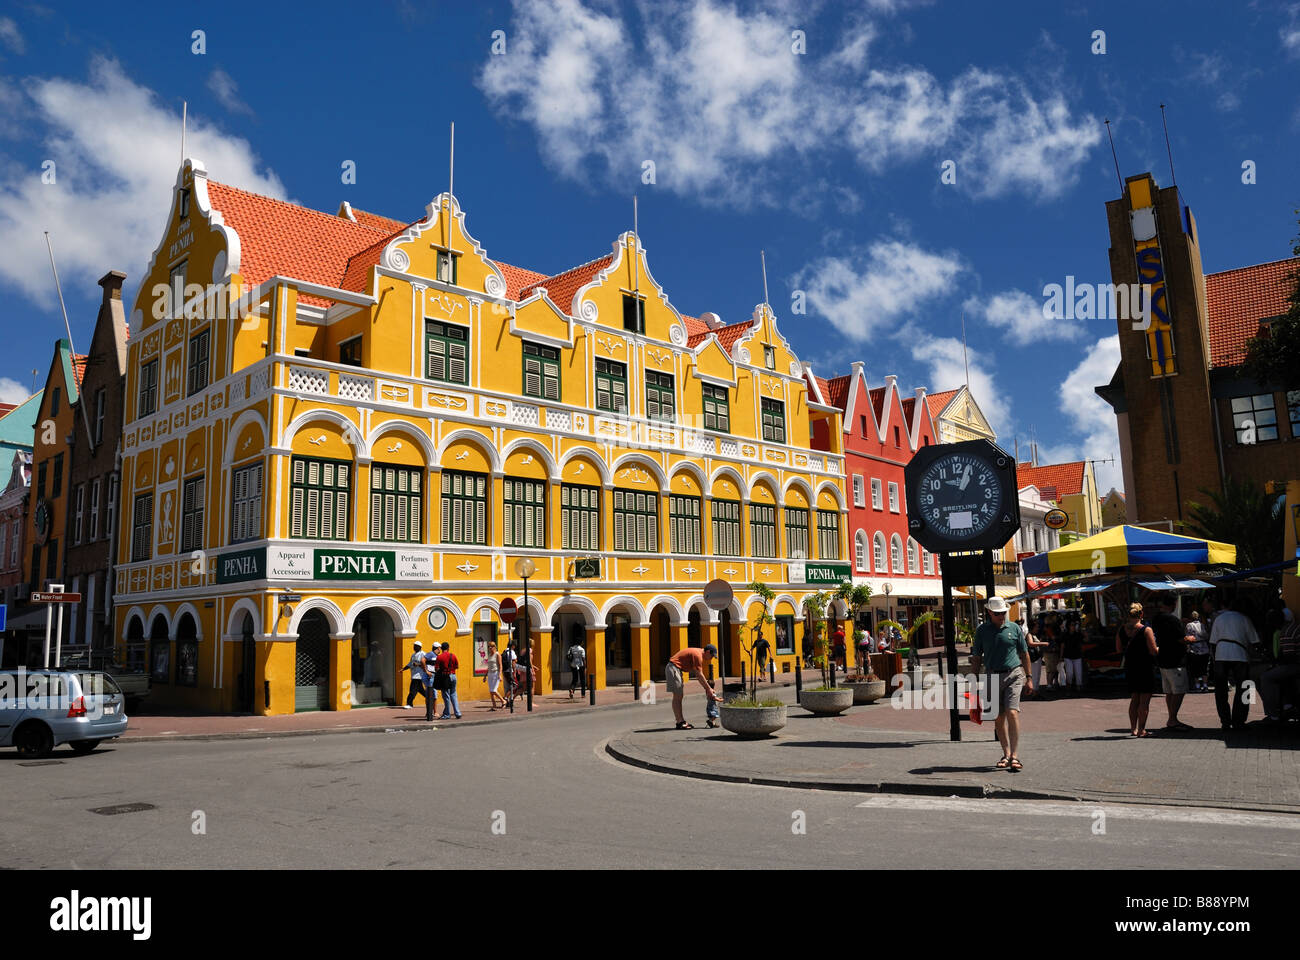 Le Penha et Fils est le plus ancien bâtiment de Willemstad, Curaçao, Antilles néerlandaises (Îles ABC). Banque D'Images